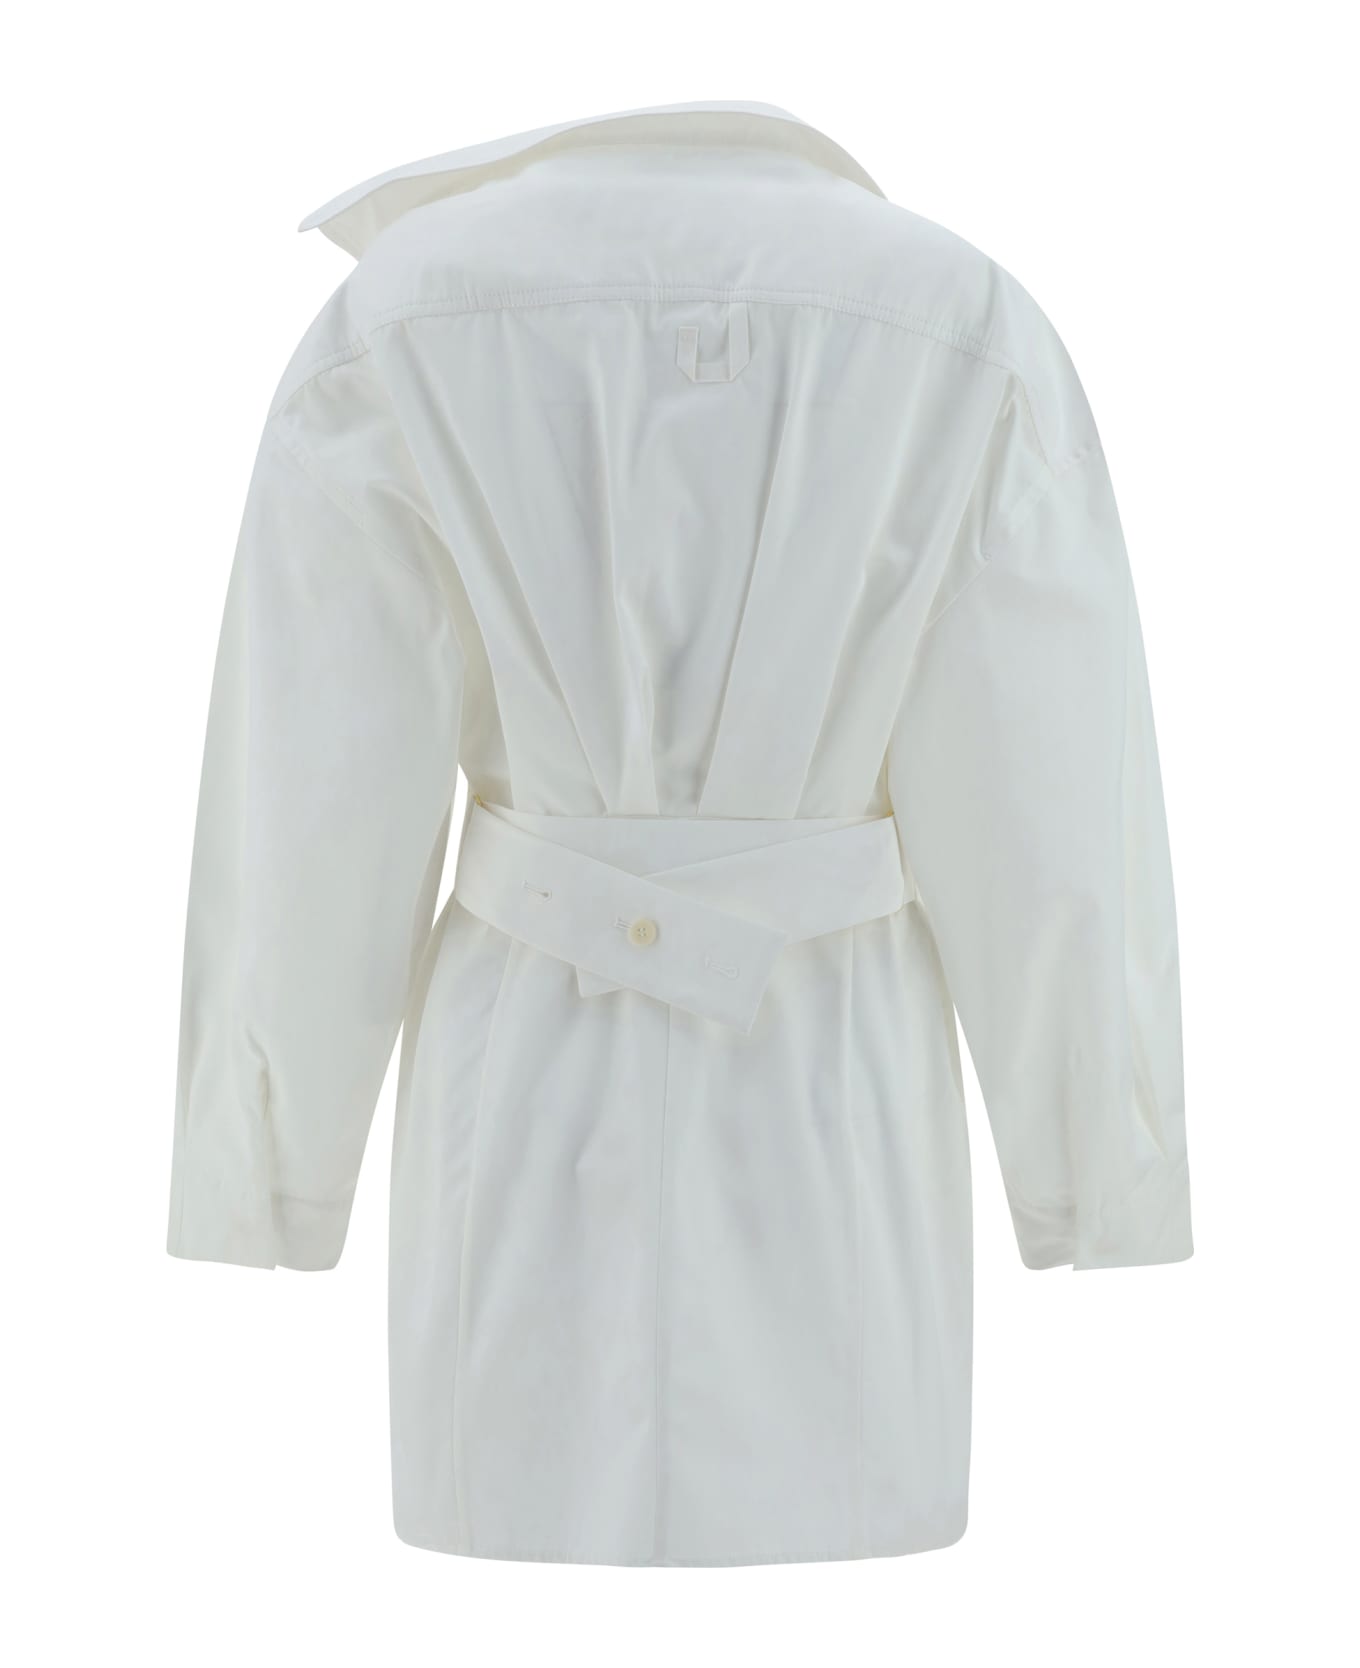 Jacquemus La Mini Robe Chemisier Dress - White レインコート